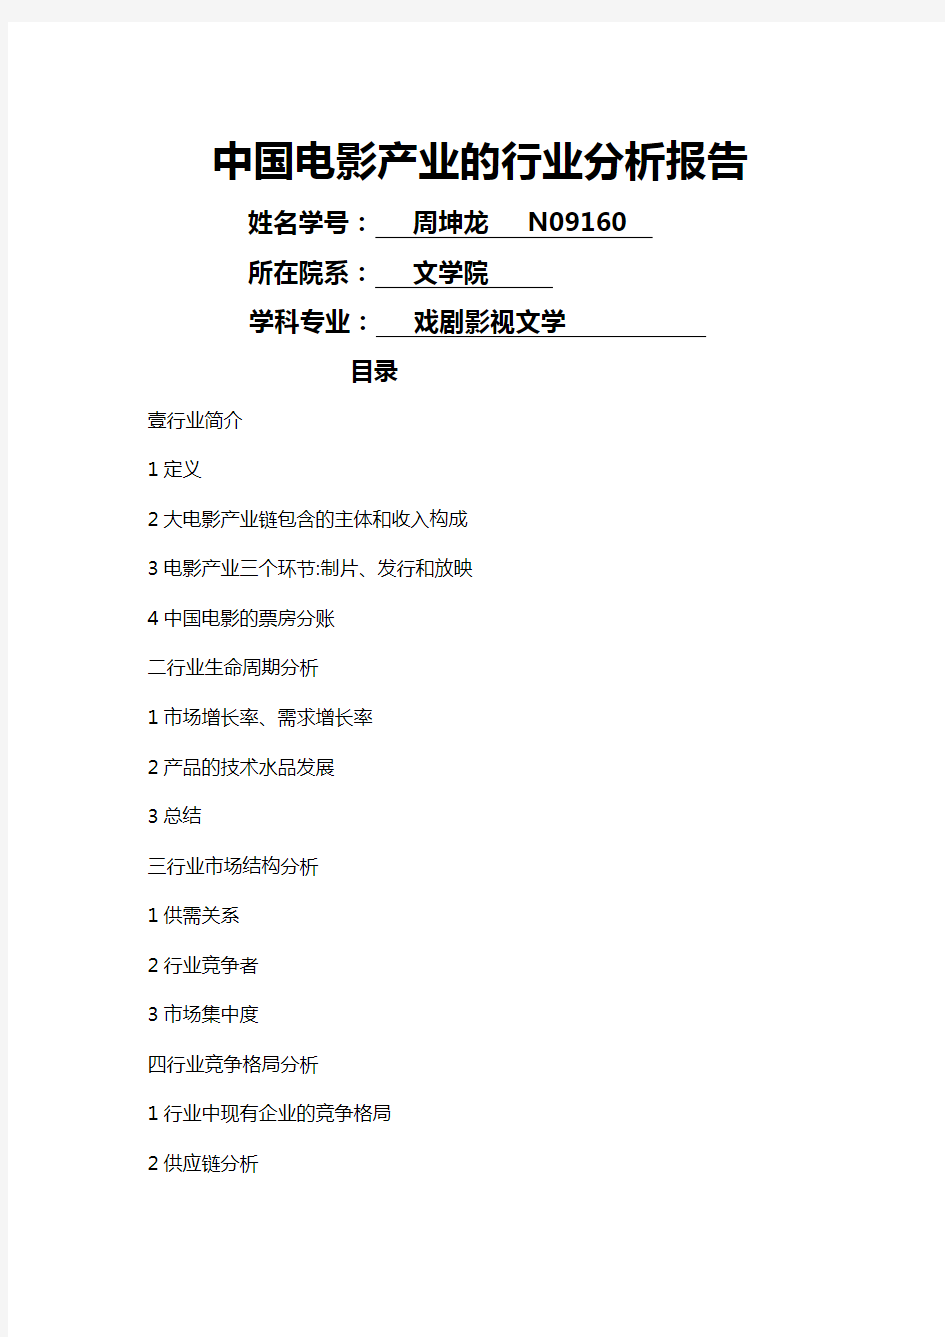 (行业分析)中国电影产业的行业分析报告最全版